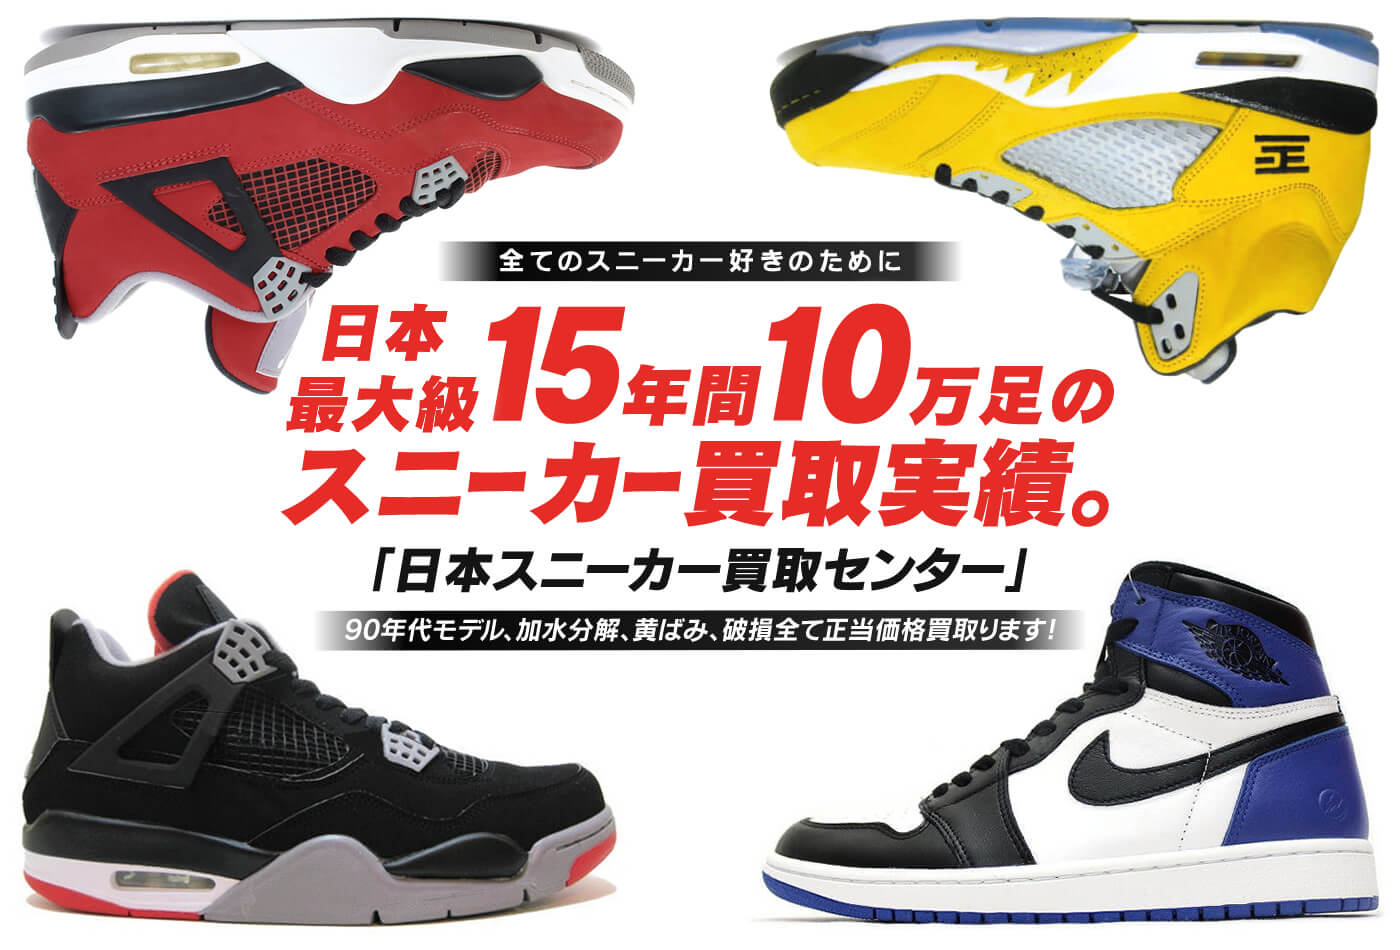 全てのスニーカー好きのために 日本最大級15年間10万足のスニーカー買取実績。「日本スニーカー買取センター」90年代モデル、加水分解、黄ばみ、破損全て正当価格買取ります!